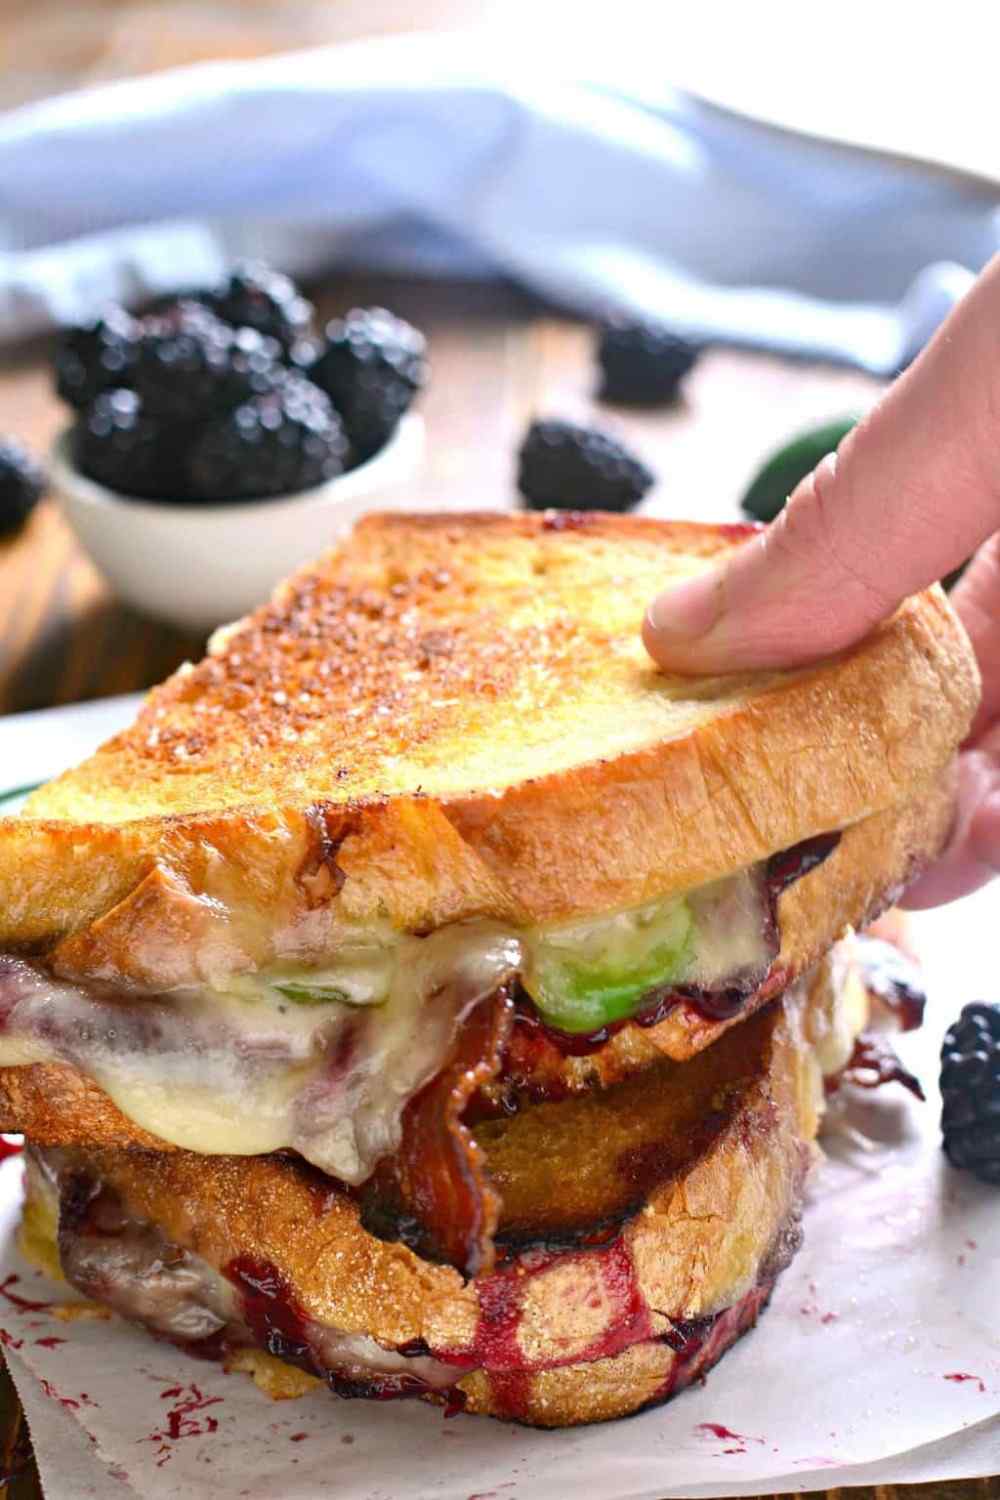 lecker aussehendes doppeltes sandwich mit geschmolzenem käse und speck